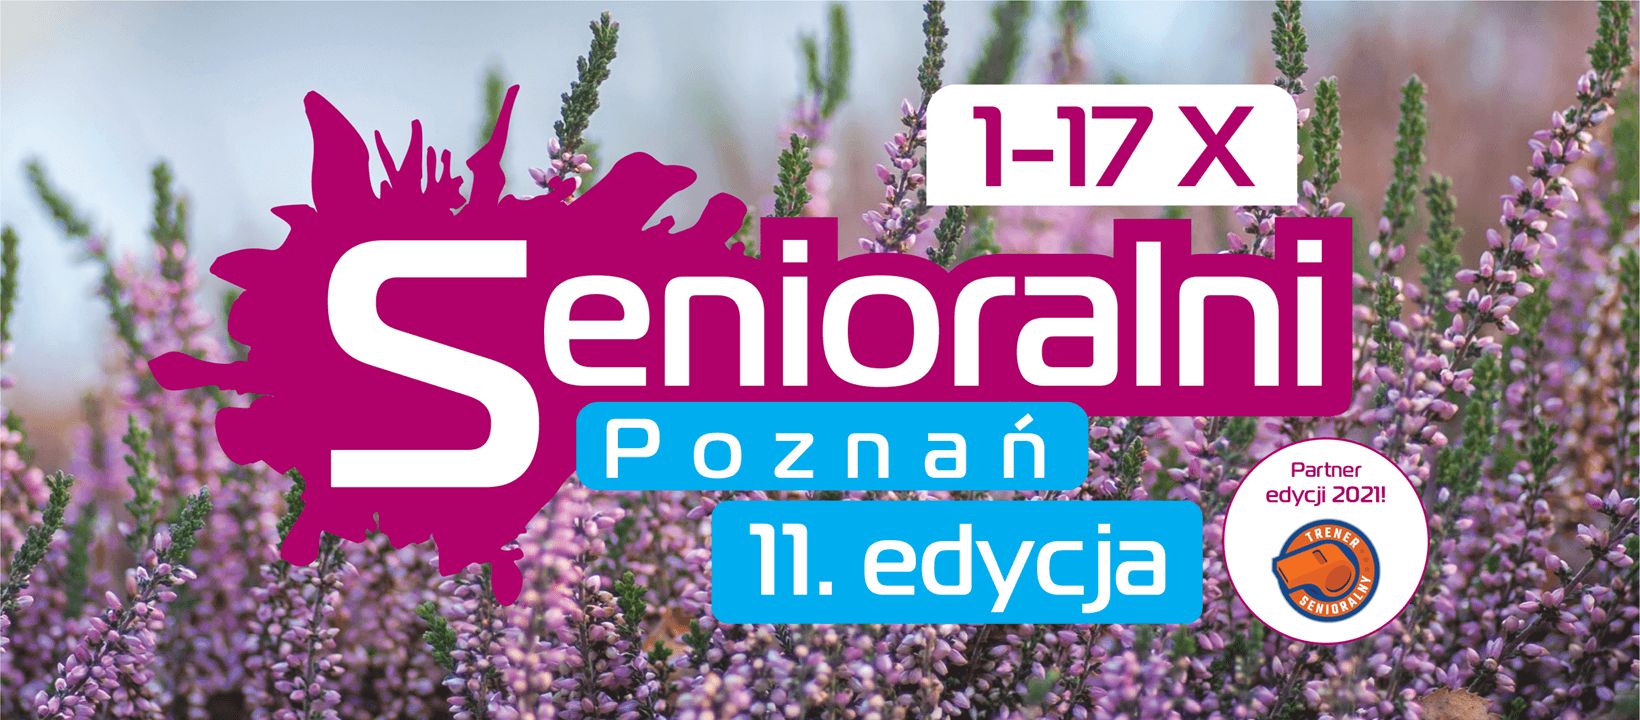 Grafika z napisem Senioralni 1-17 X Poznań 11 edycja oraz kwiaty wrzosu